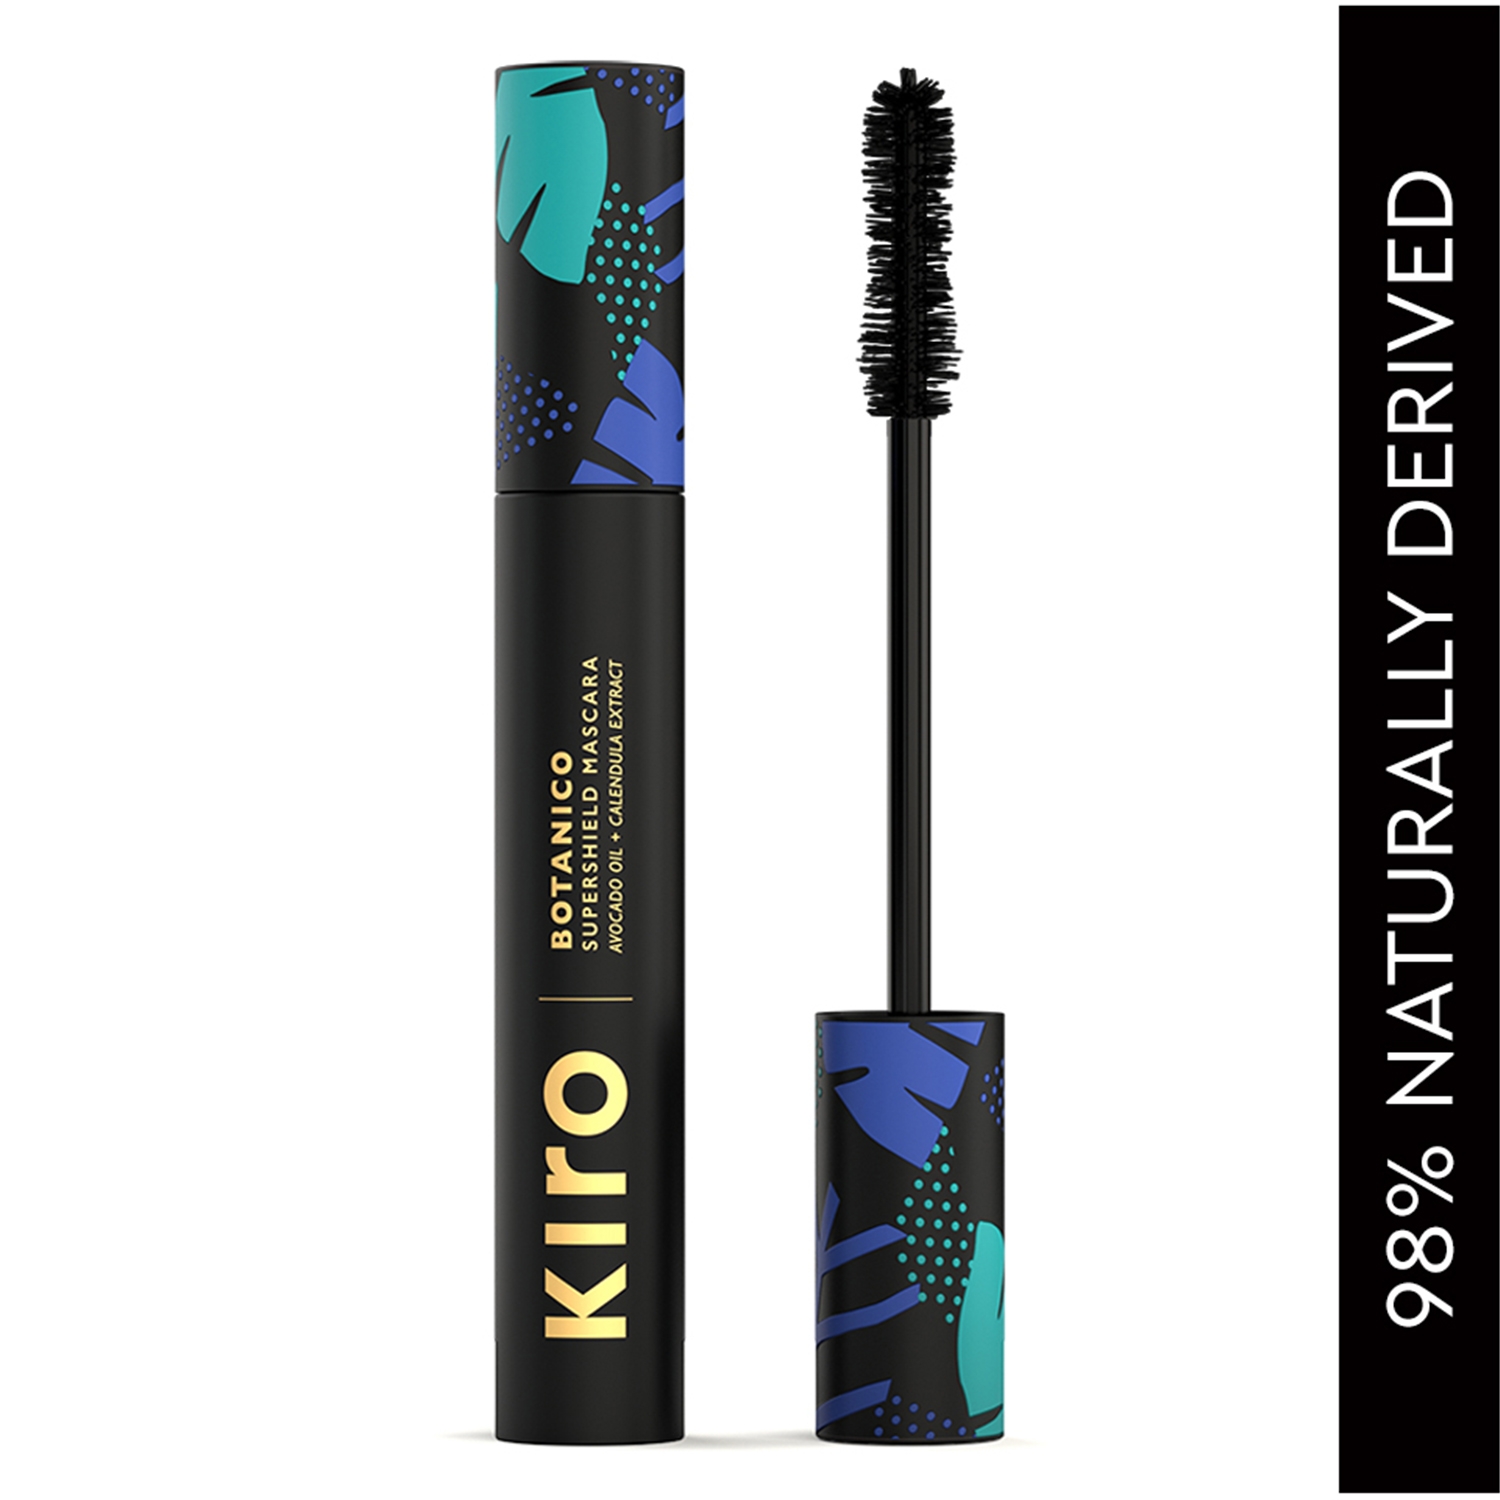 KIRO | KIRO Botanico Super Shield Mascara - 01 Carbon Black (9g)